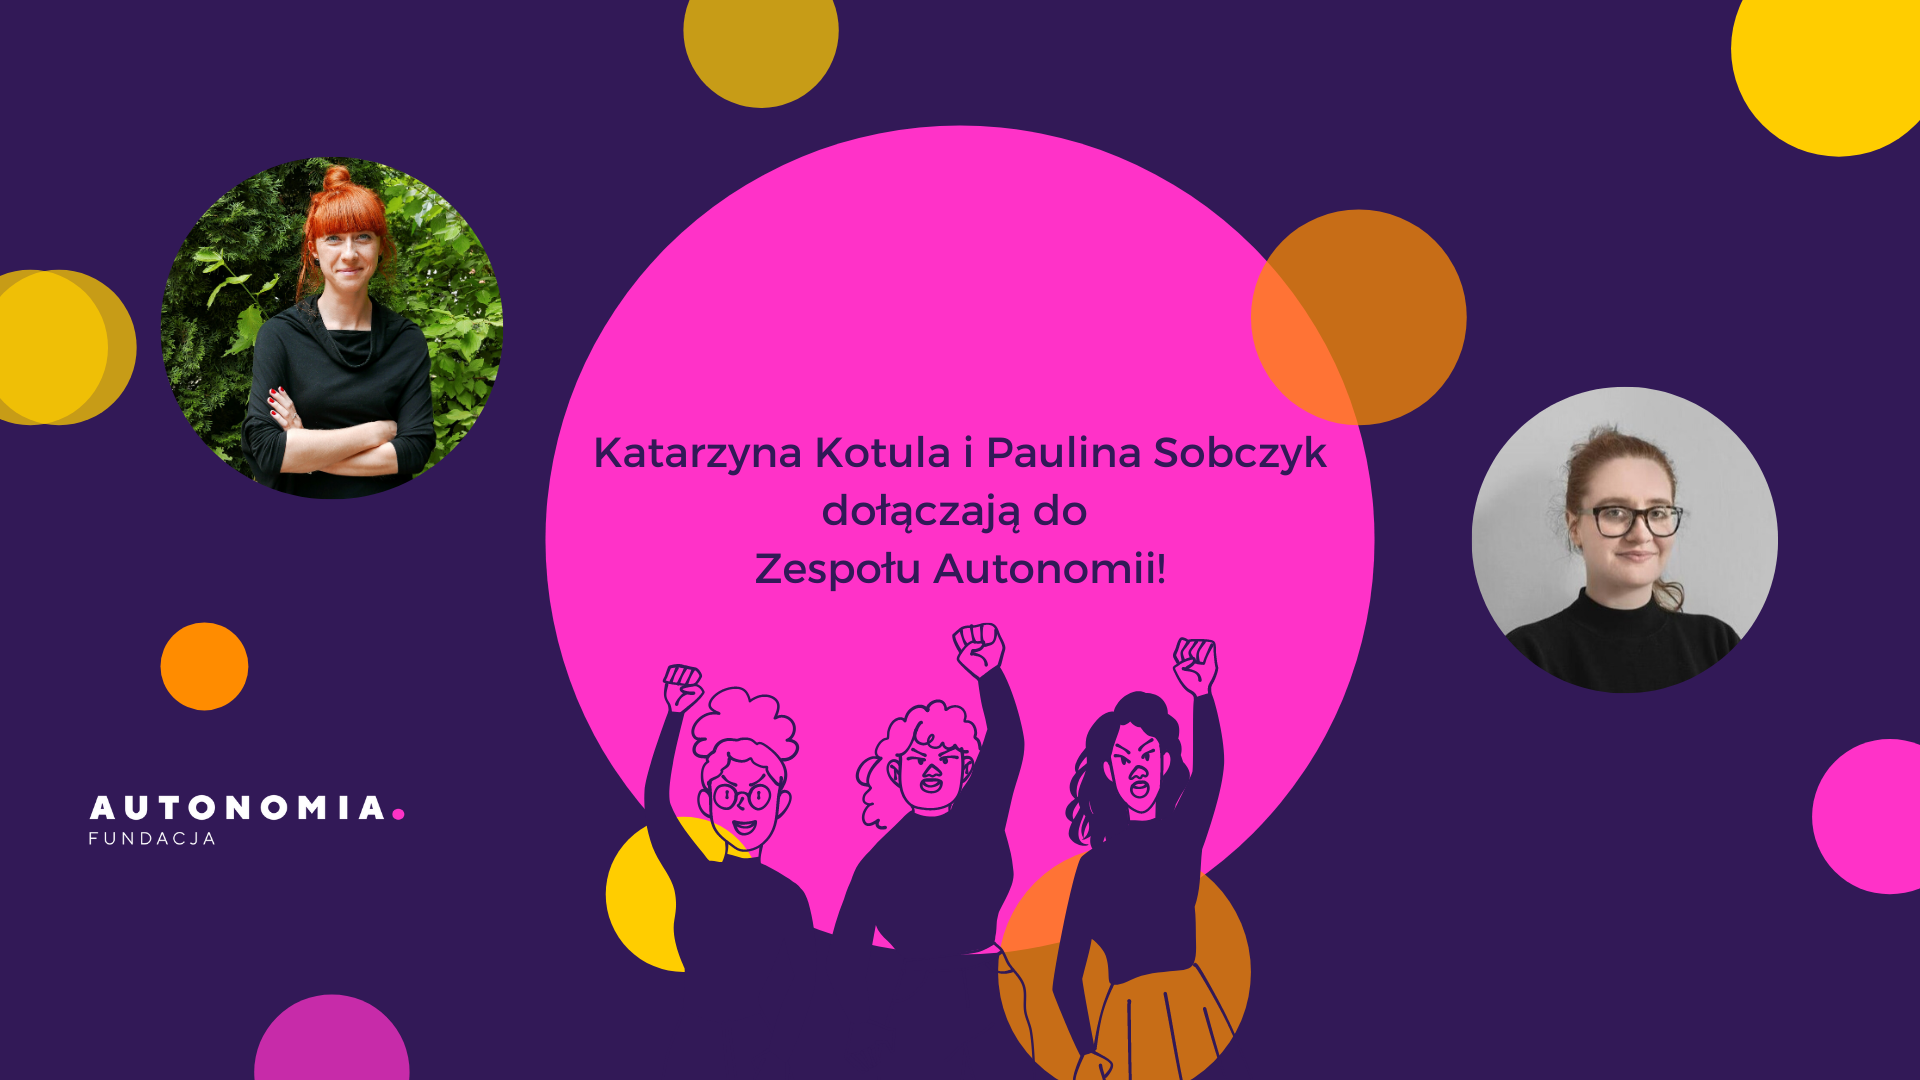 Grafika informująca o tym, że Katarzyna Kotula i Paulina Sobczyk dołączają do zespołu Autonomii